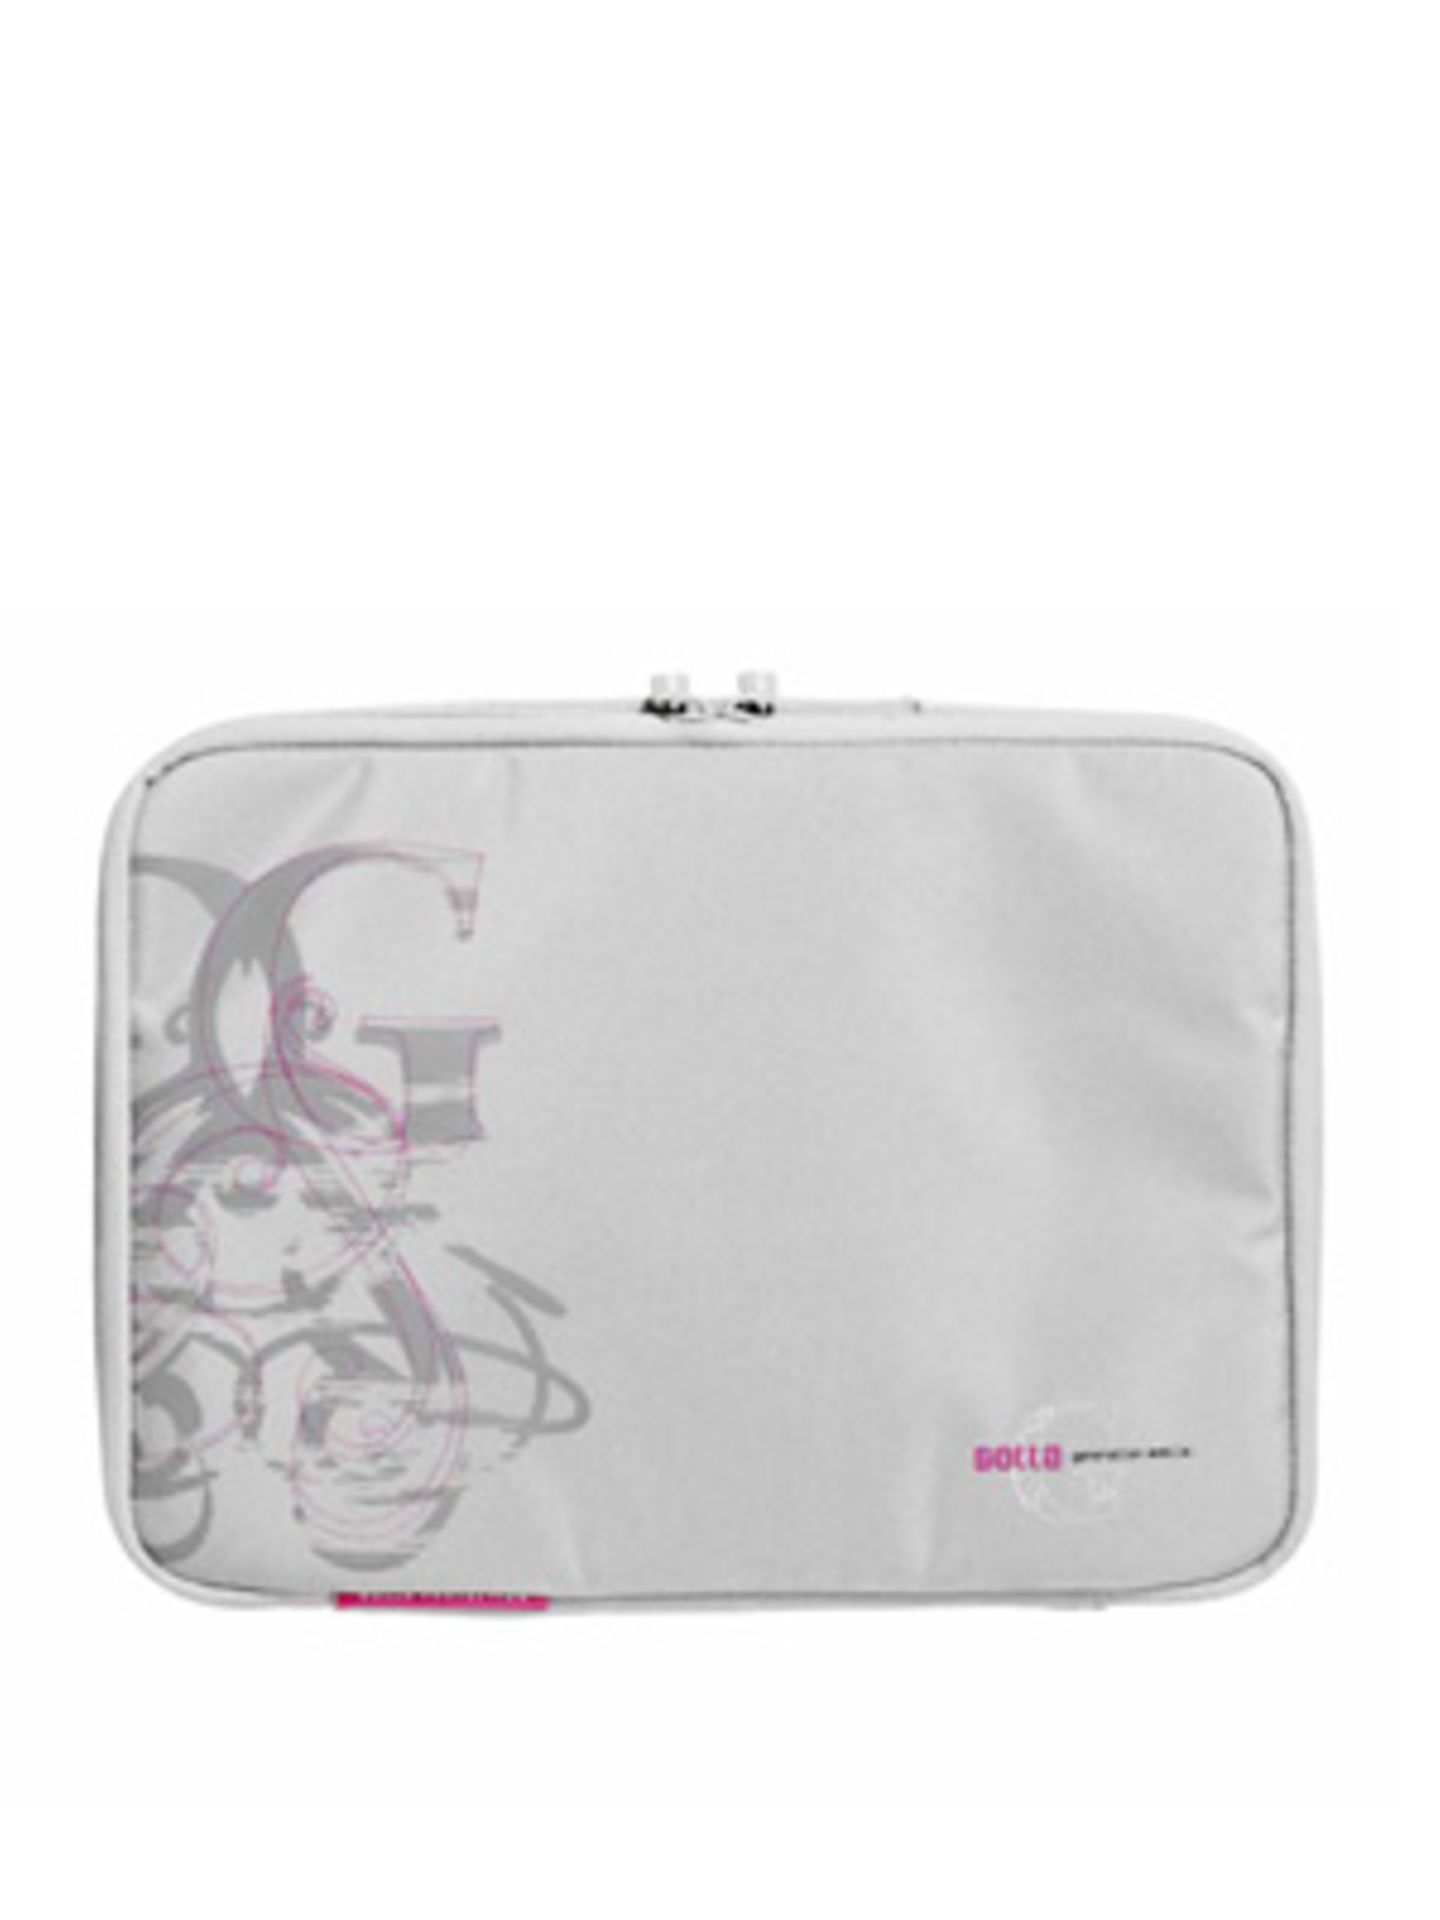 Notebook-Cover für's 15"-Notebook in Grau mit pinkfarbenen Details von Golla, um 20 Euro.